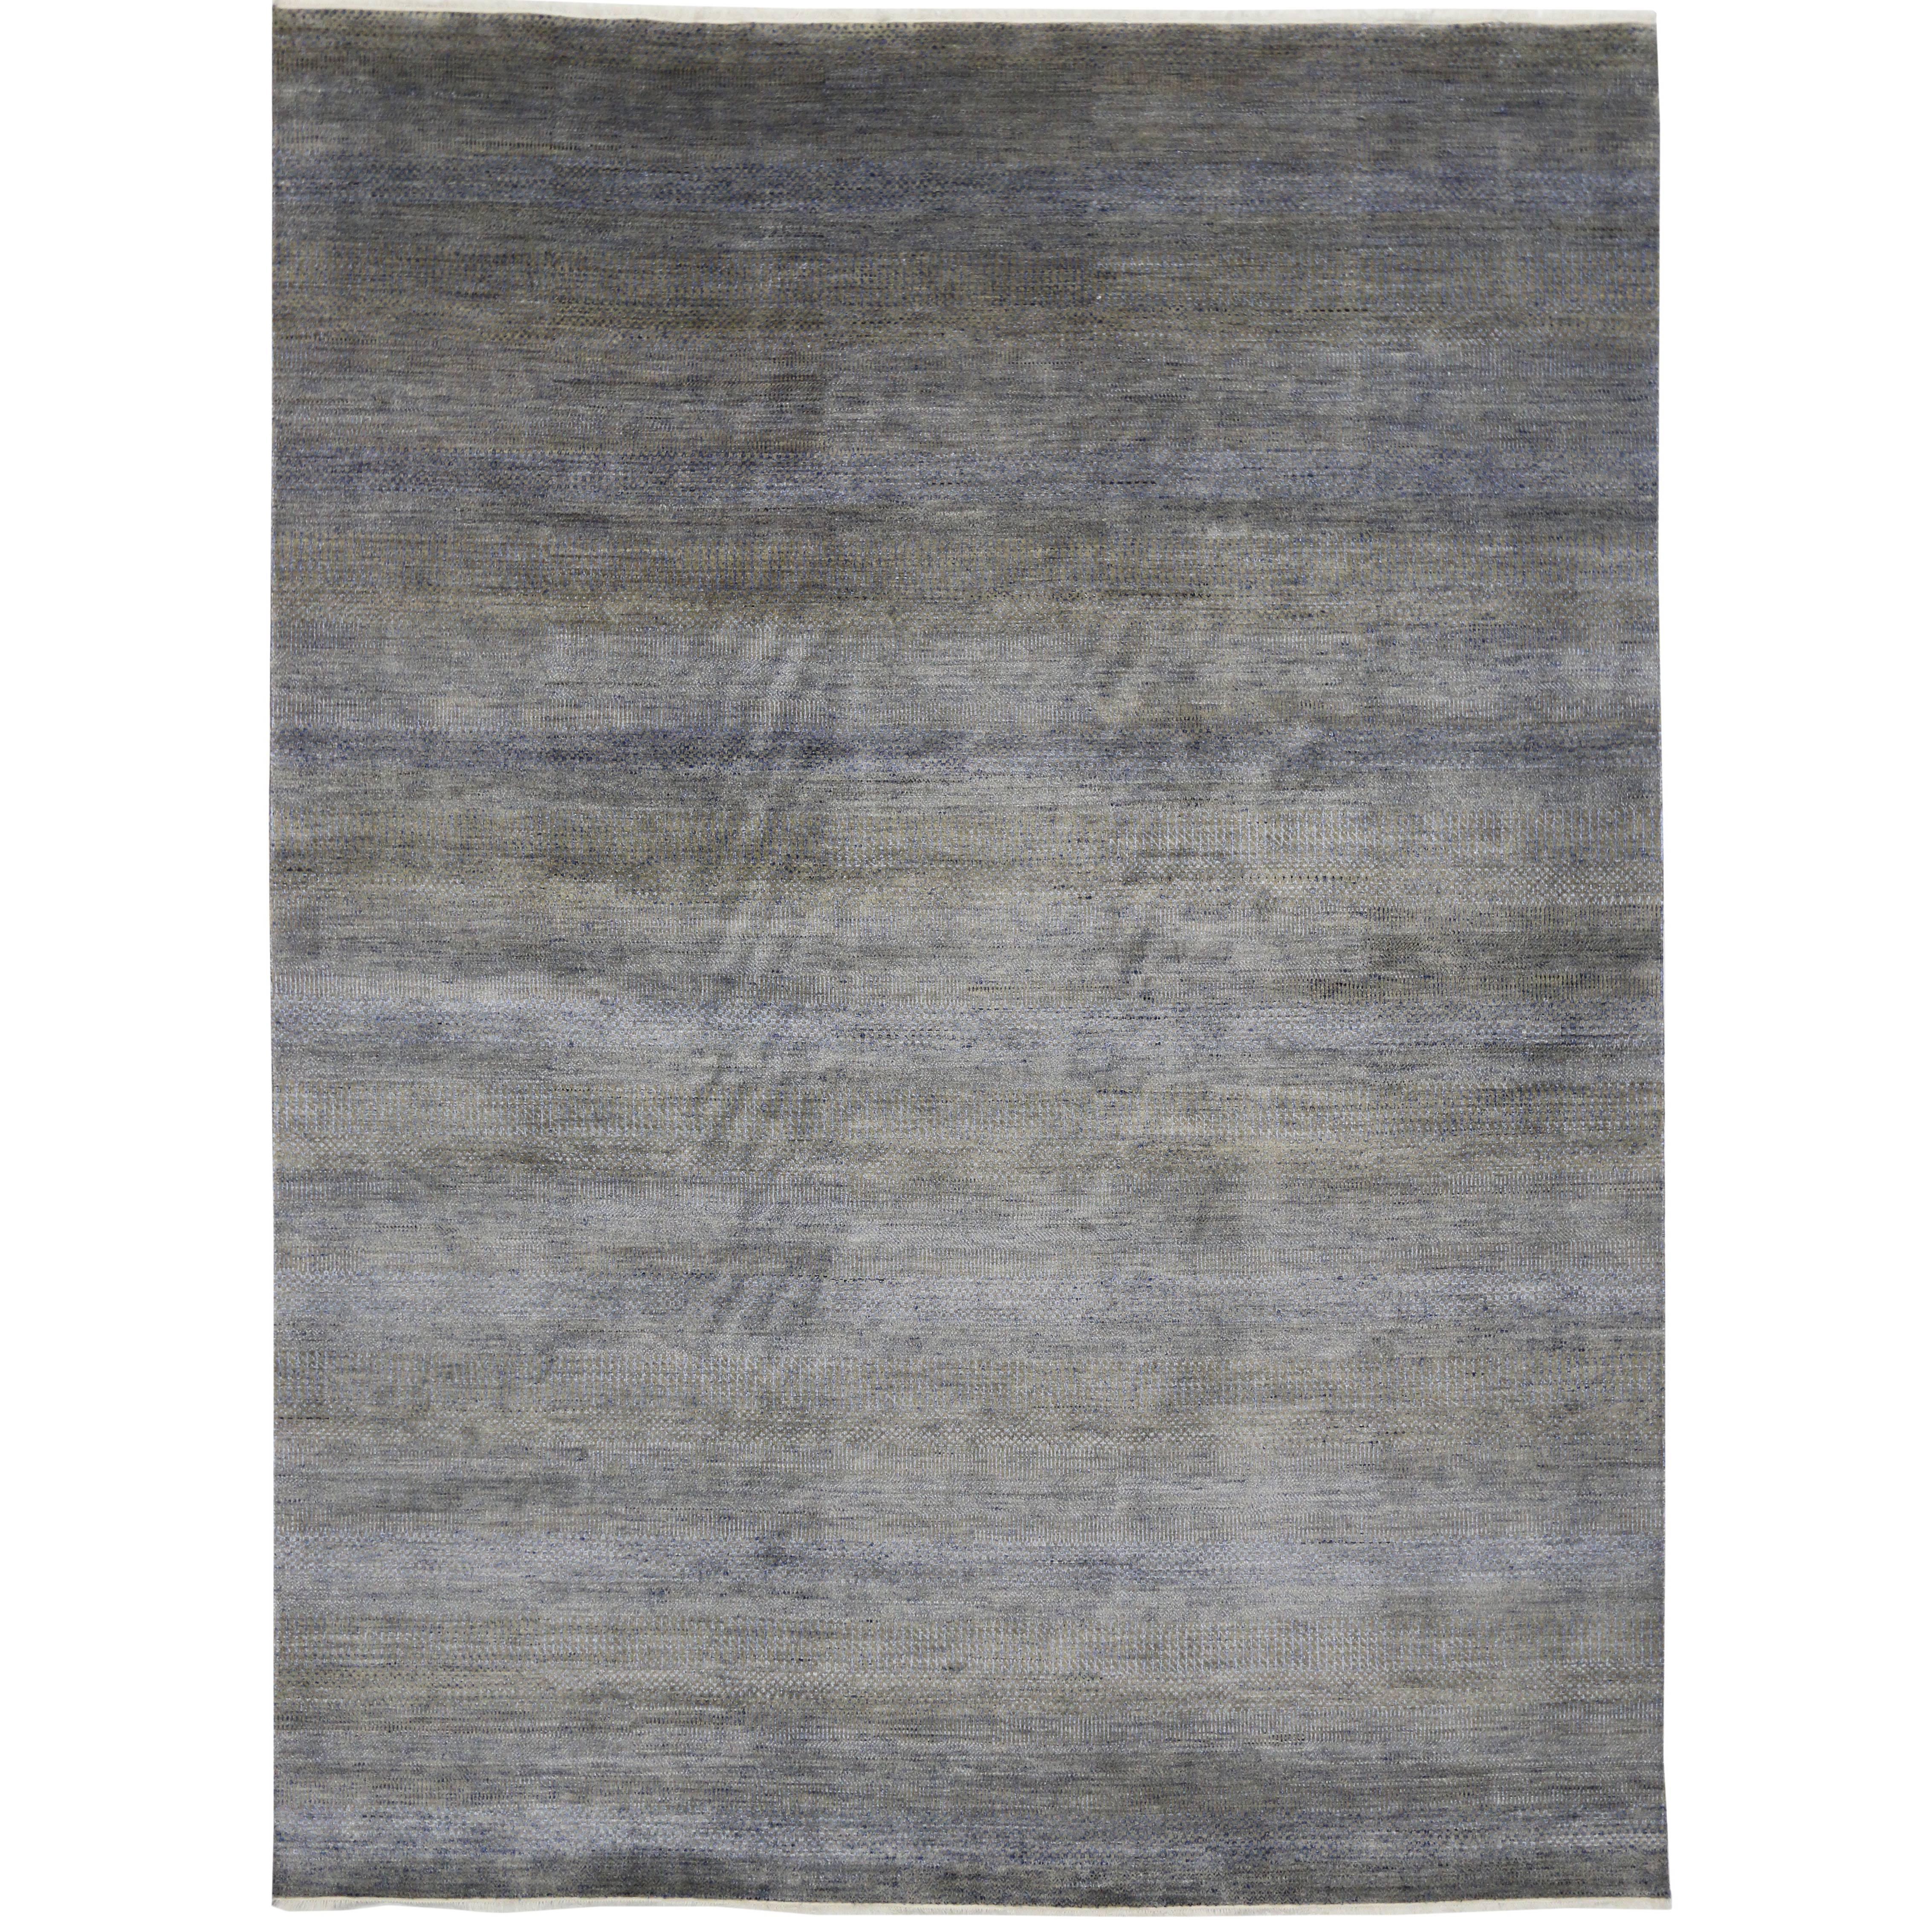 Nouveau tapis gris contemporain transitionnel avec style international moderne